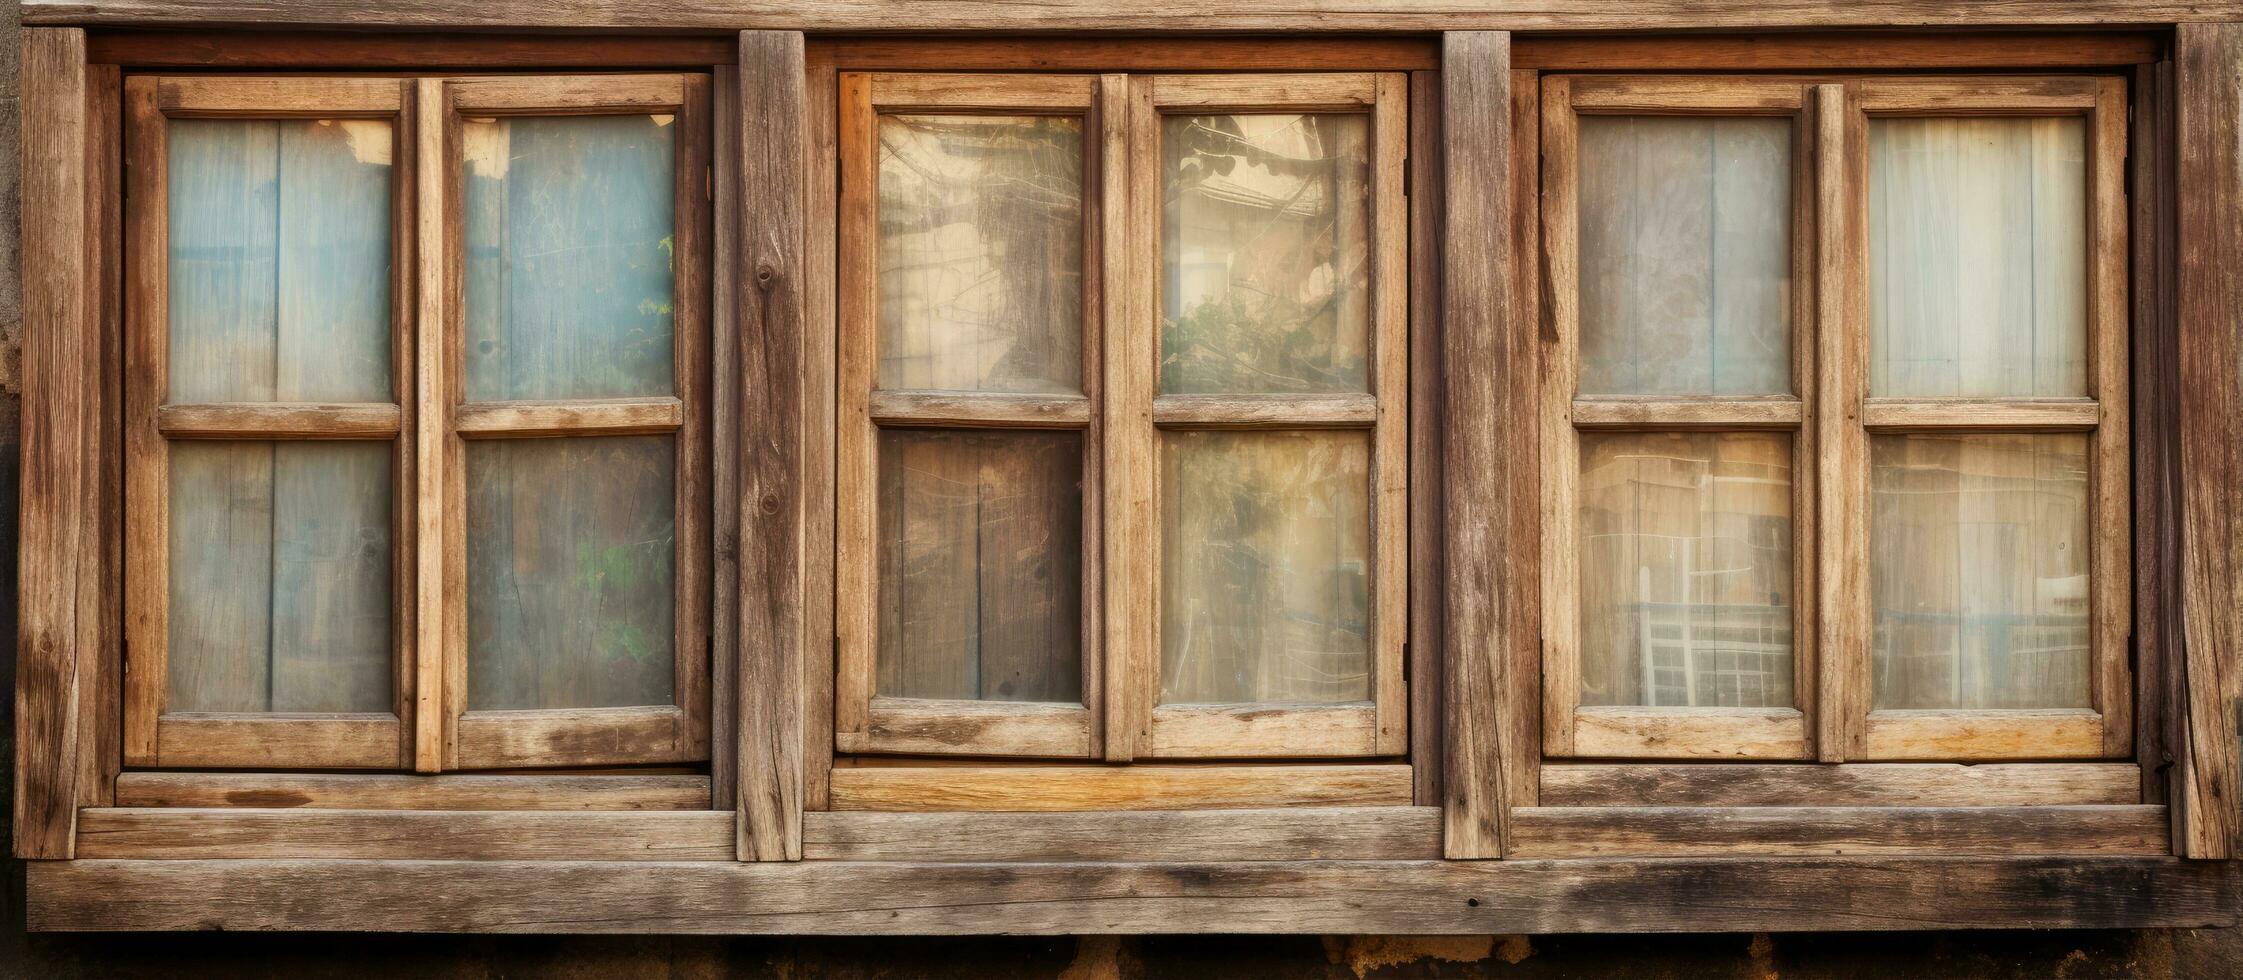 Envejecido de madera ventanas foto